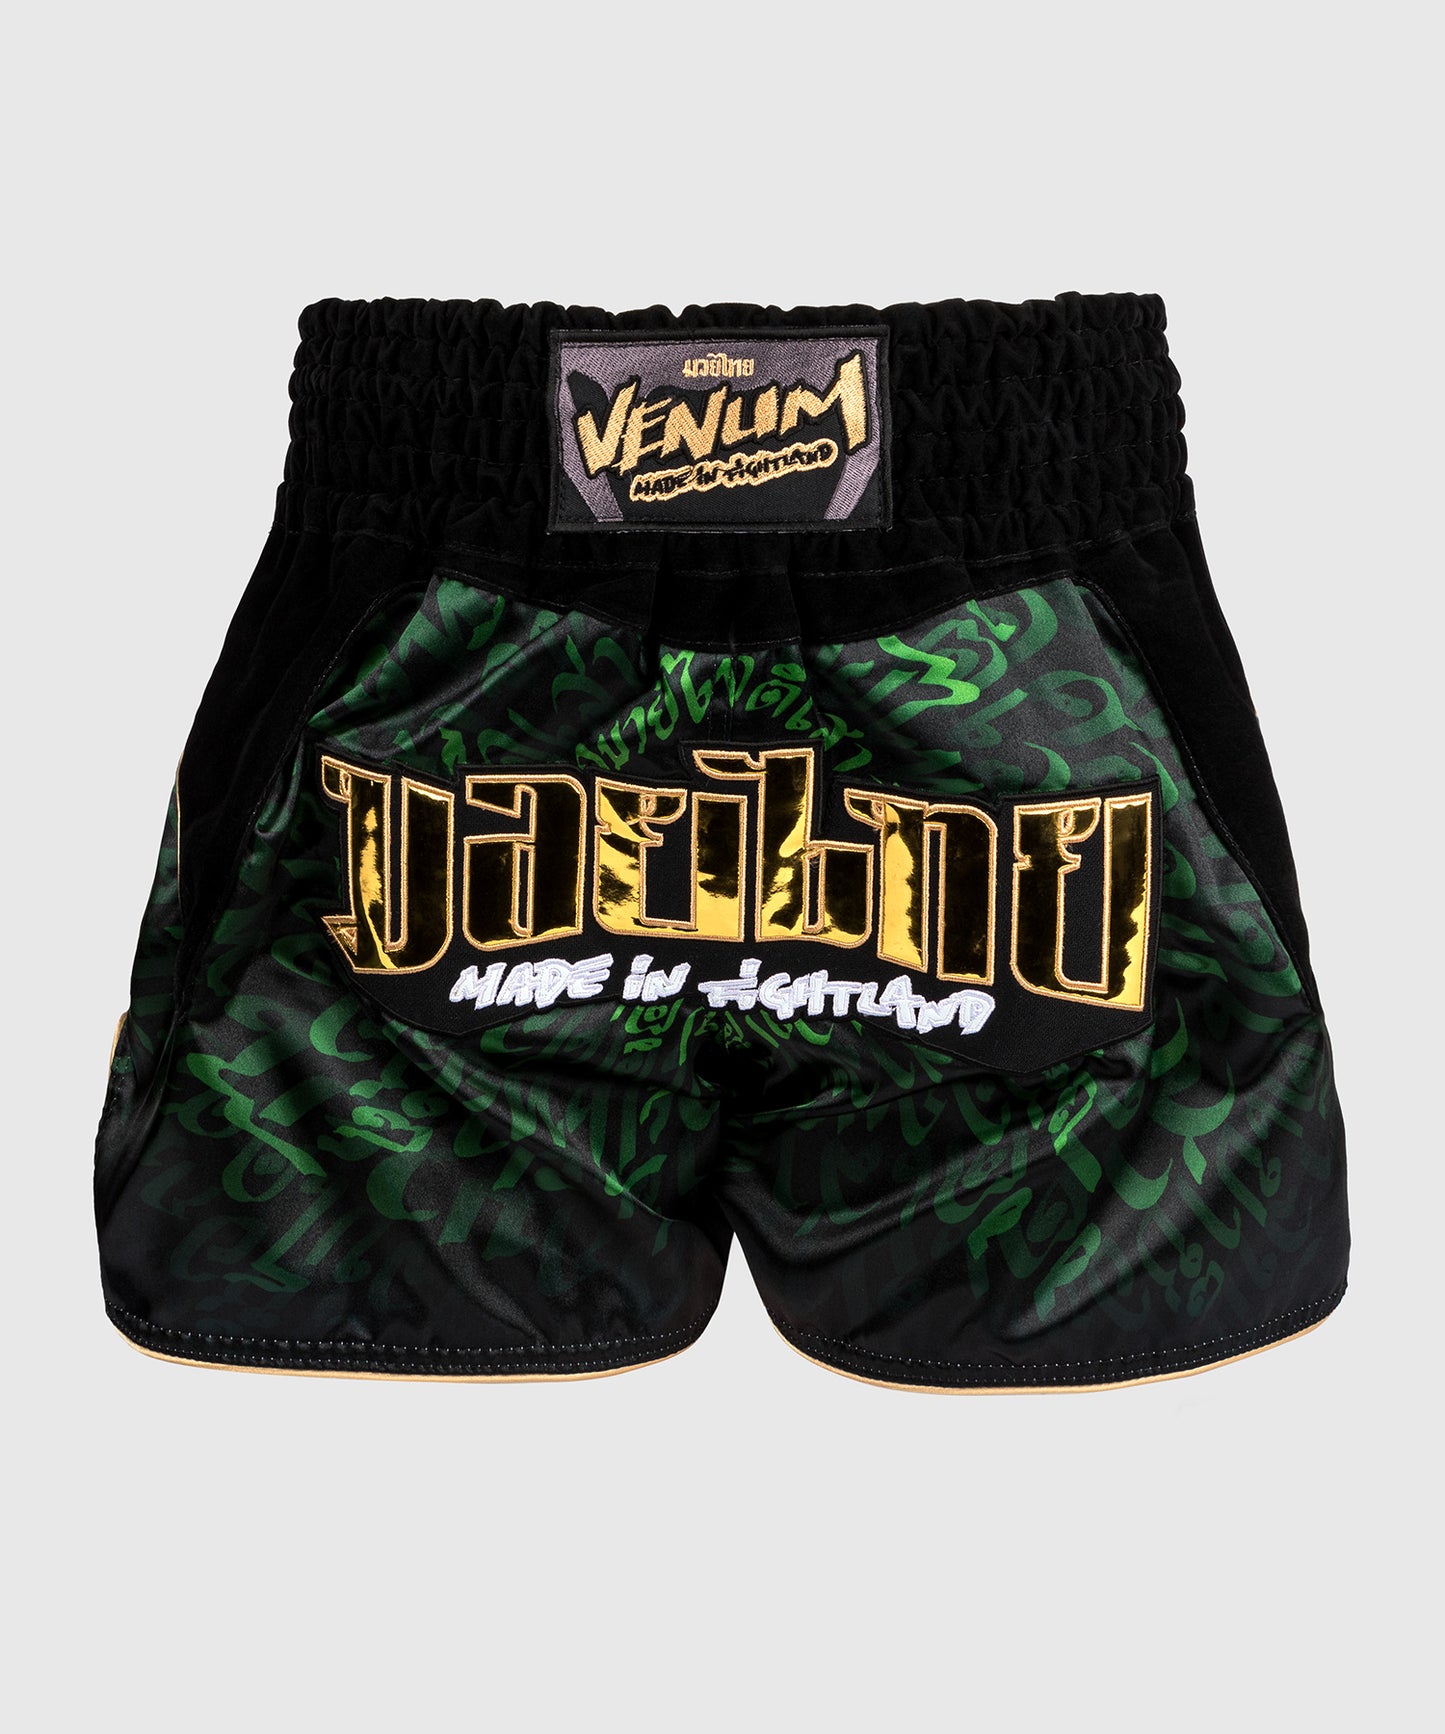 Venum Attack Shorts de Muay Thai - Negro/Verde